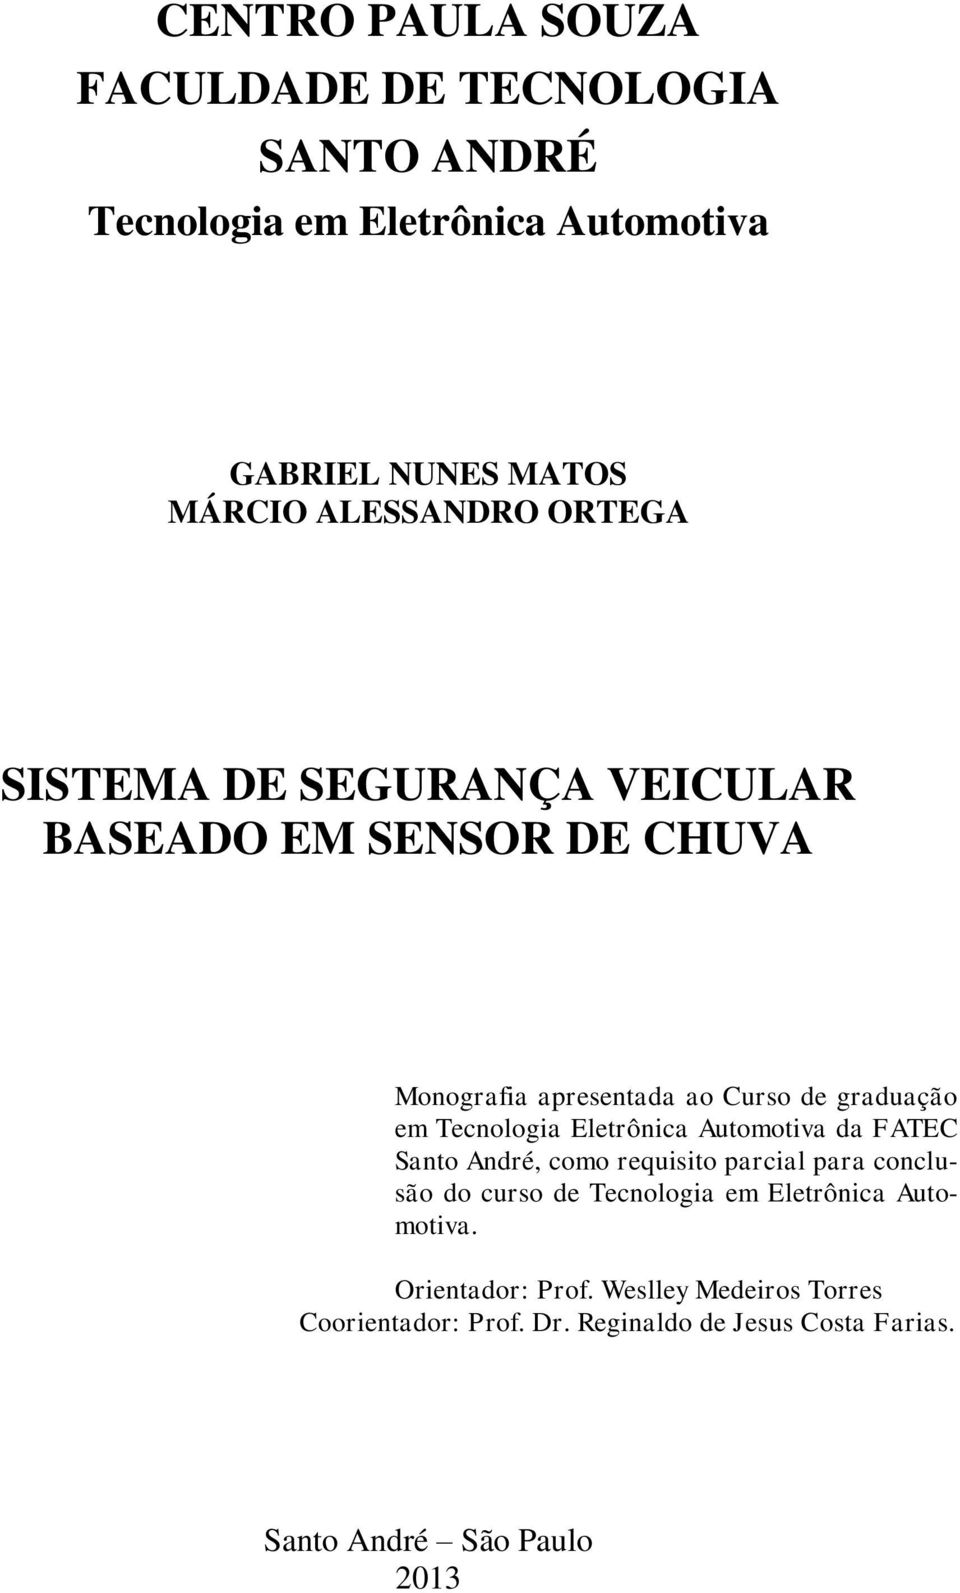 Tecnologia Eletrônica Automotiva da FATEC Santo André, como requisito parcial para conclusão do curso de Tecnologia em